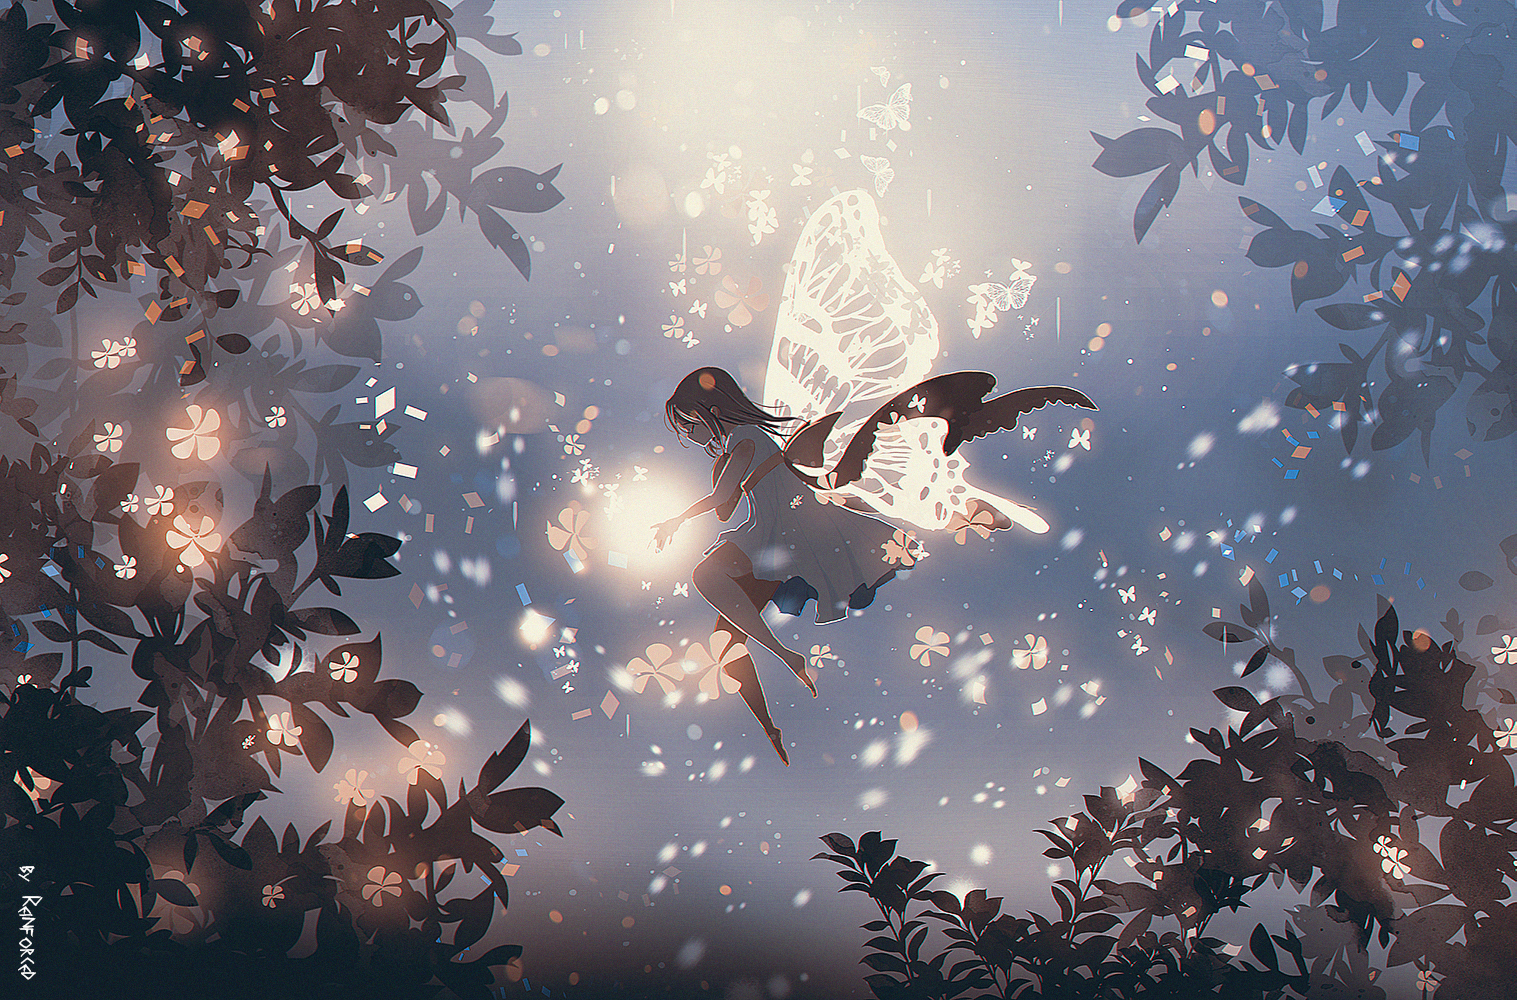 Фото Девочка с крыльями бабочки со свечением в руках парит в воздухе, by reinforced